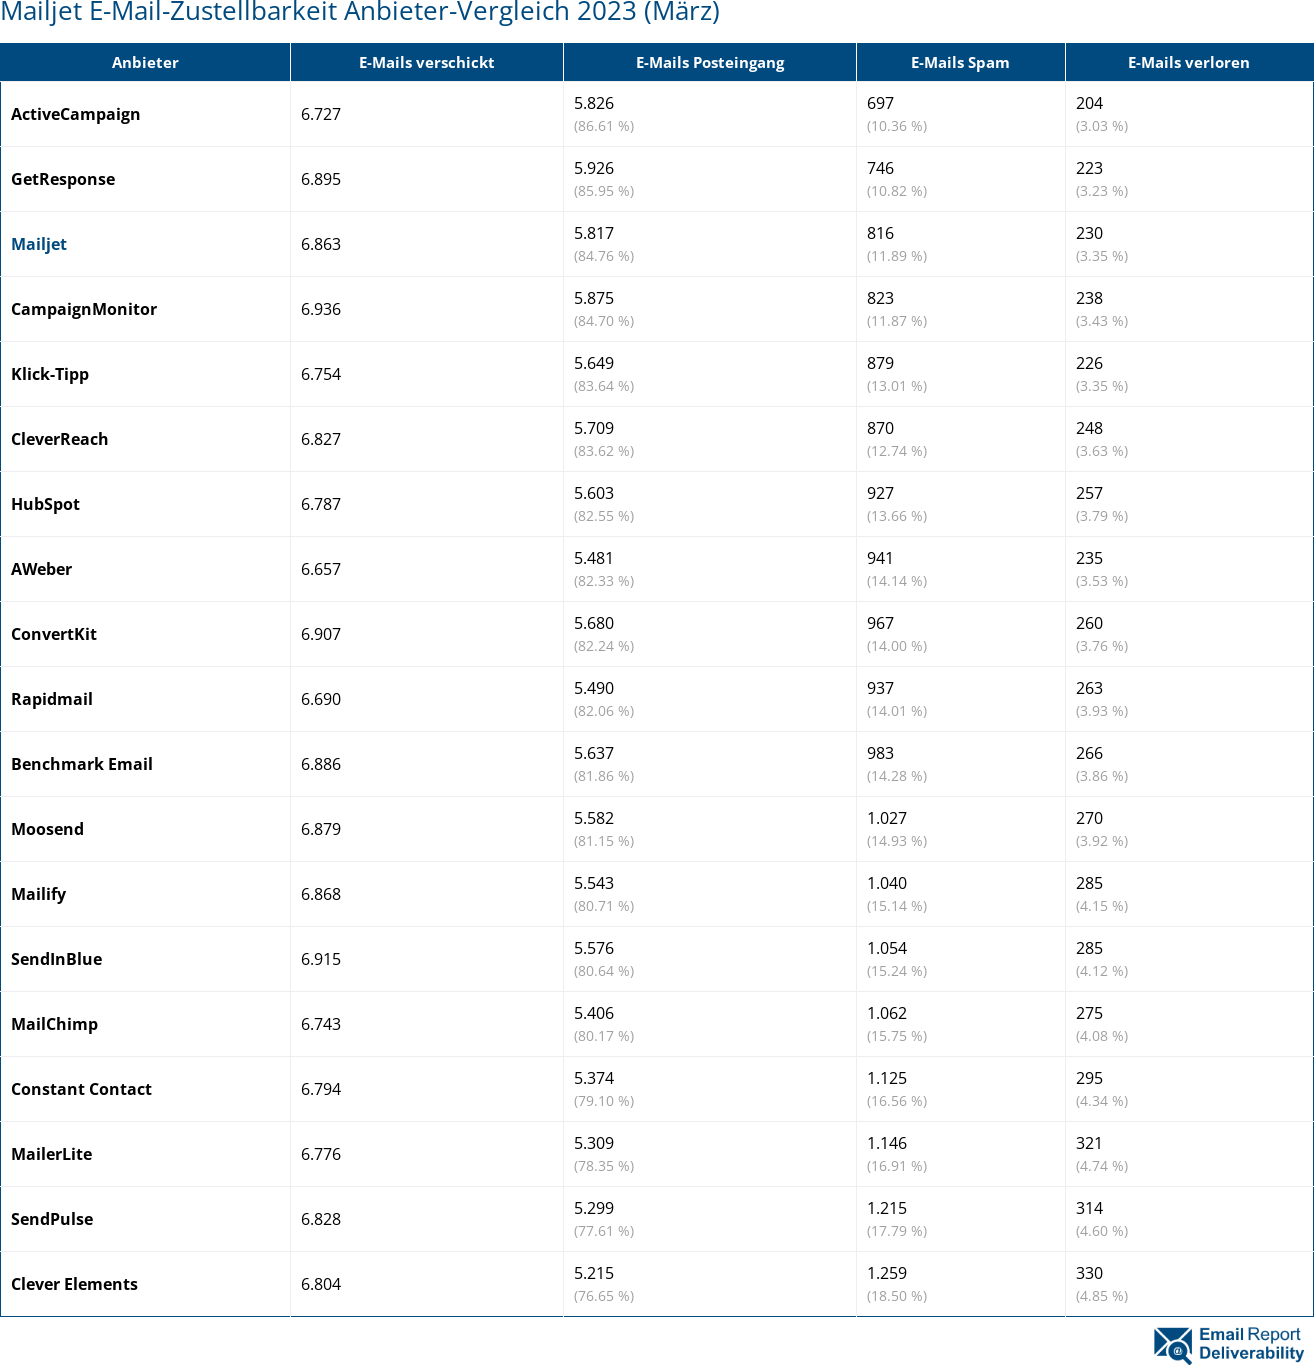 Mailjet E-Mail-Zustellbarkeit Anbieter-Vergleich 2023 (März)